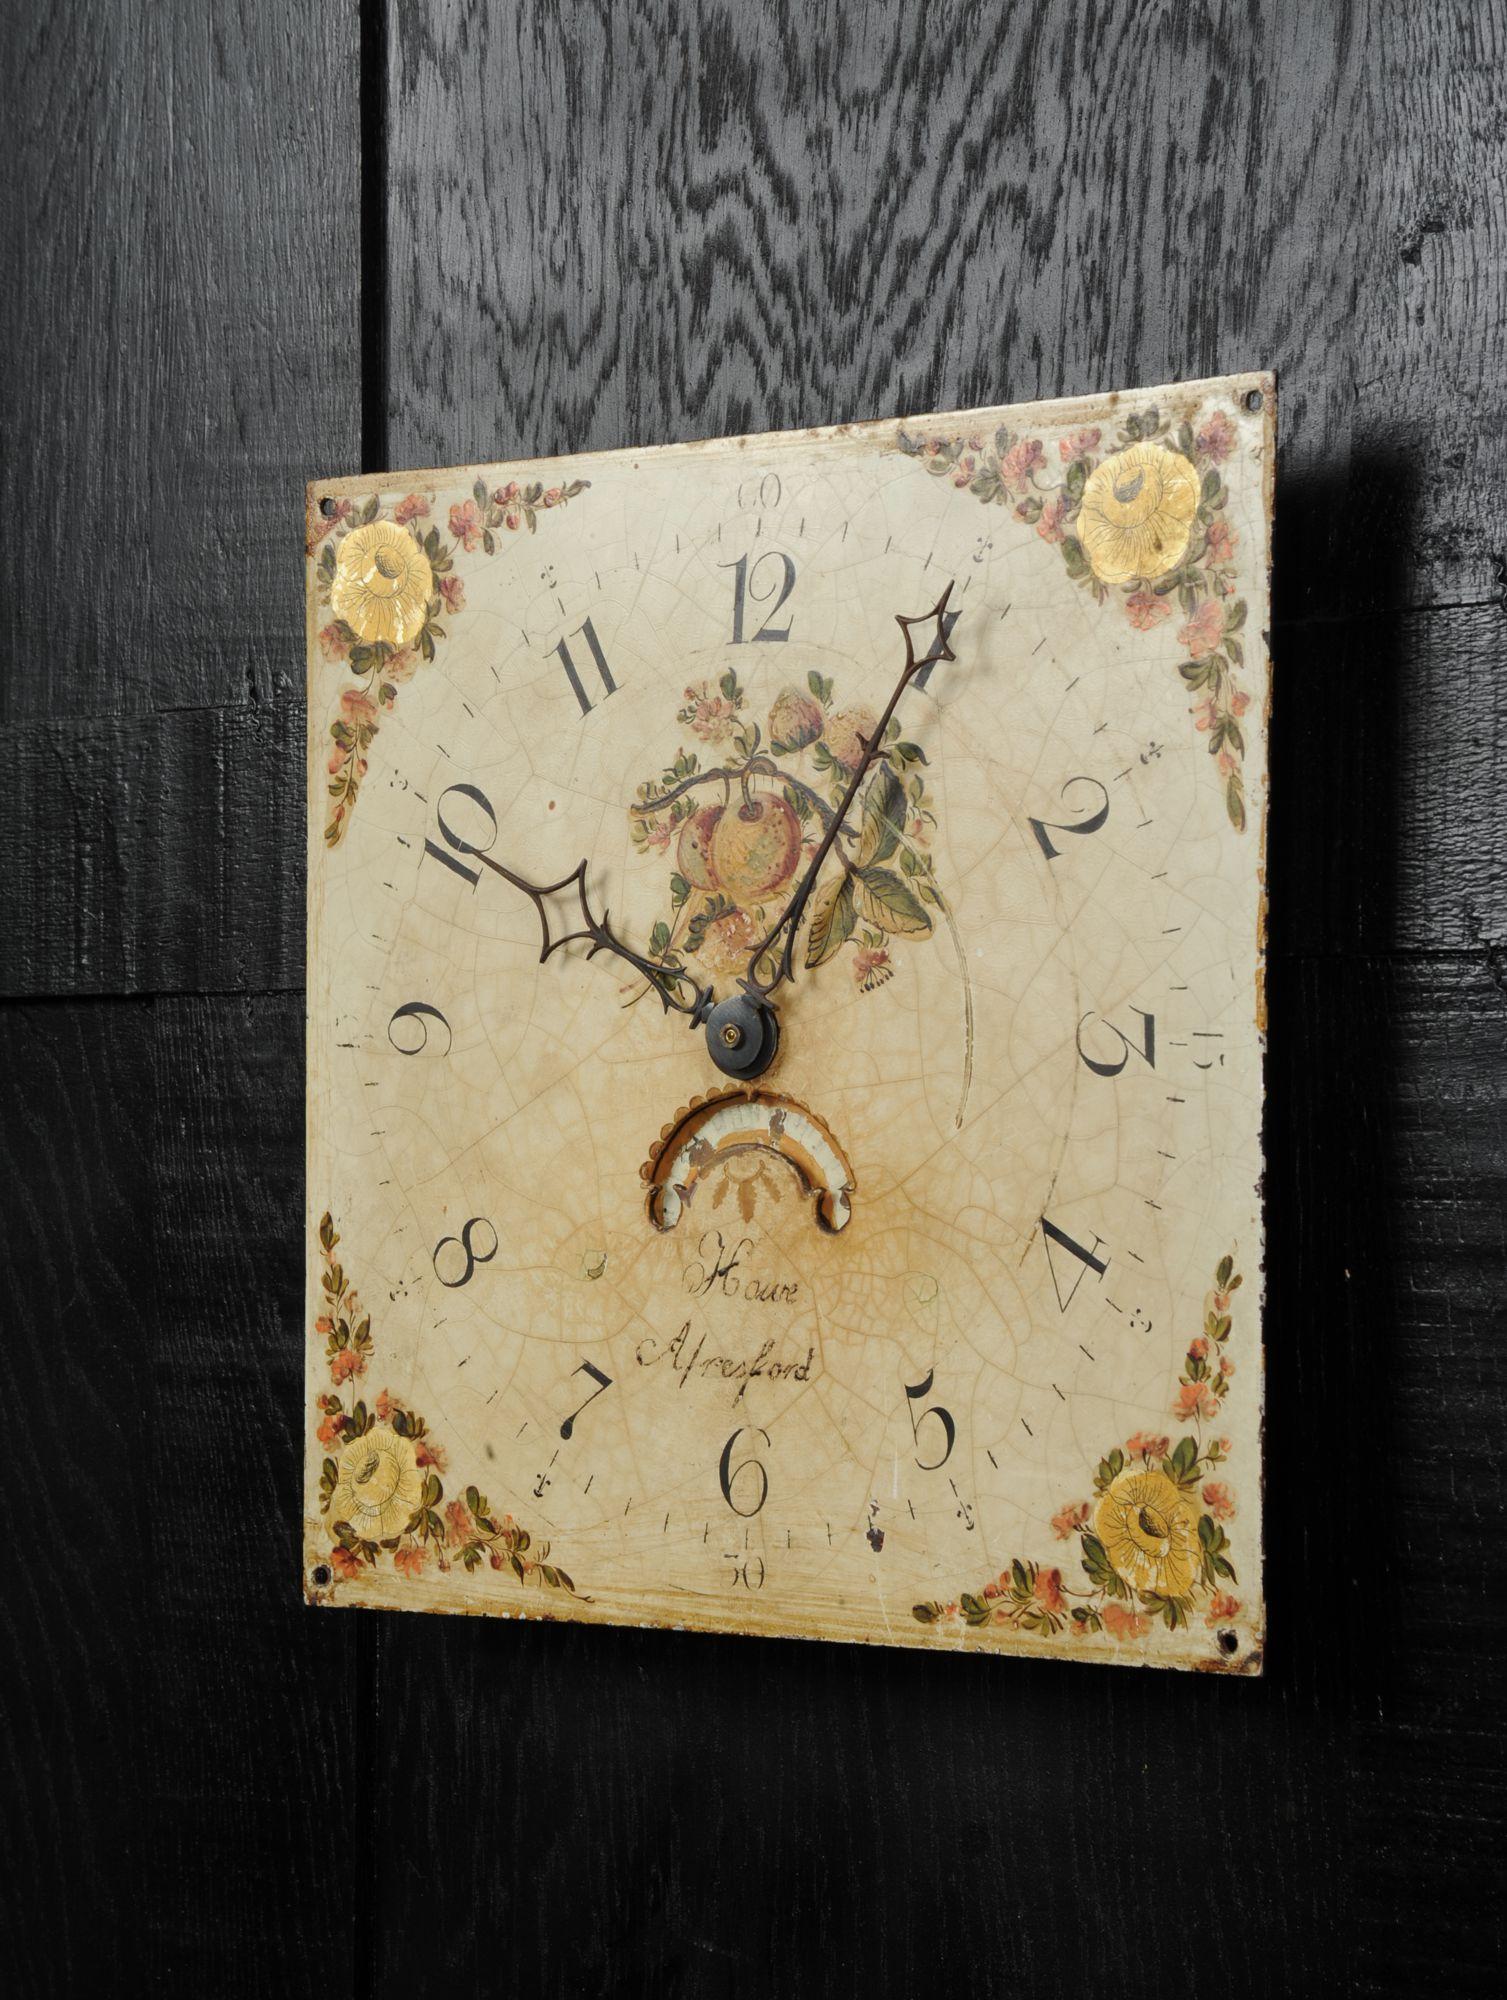 Folk Art Antique English Clock Dial Face, Country Garden, Working